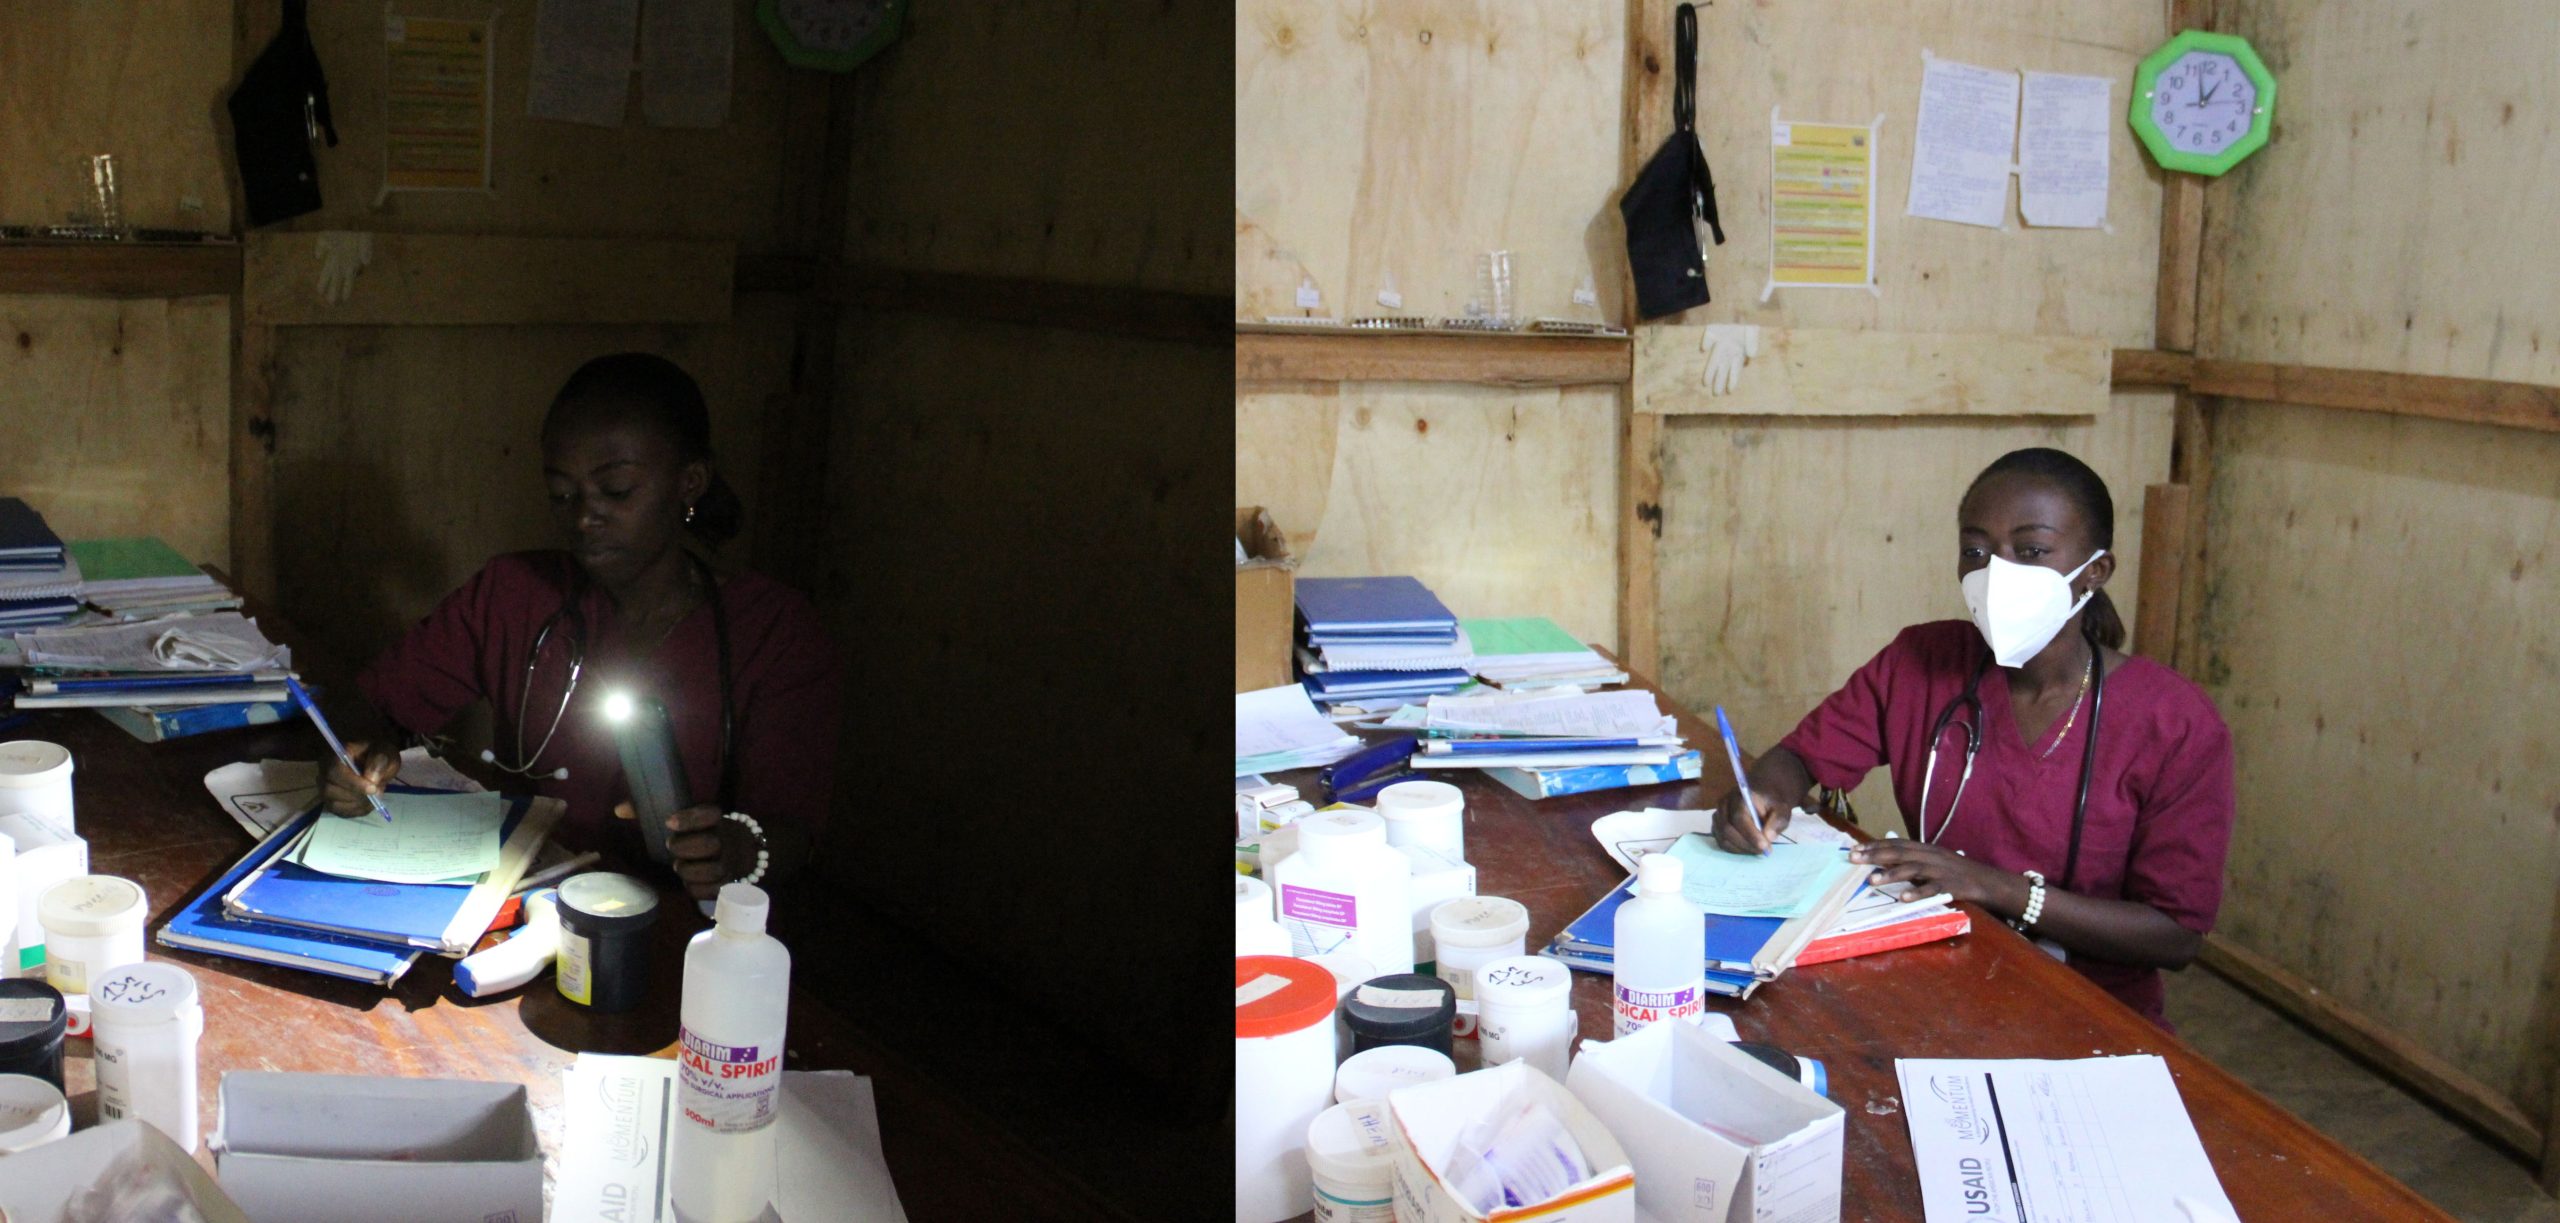 ممرضة في مرفق شمال كيفو توضح الطريقة التي اعتادت أن تعمل بها بعد حلول الظلام باستخدام مصباحها اليدوي للحفاظ على سجلات المرضى والأوراق مقارنة بالإضاءة الليلية الكاملة. 